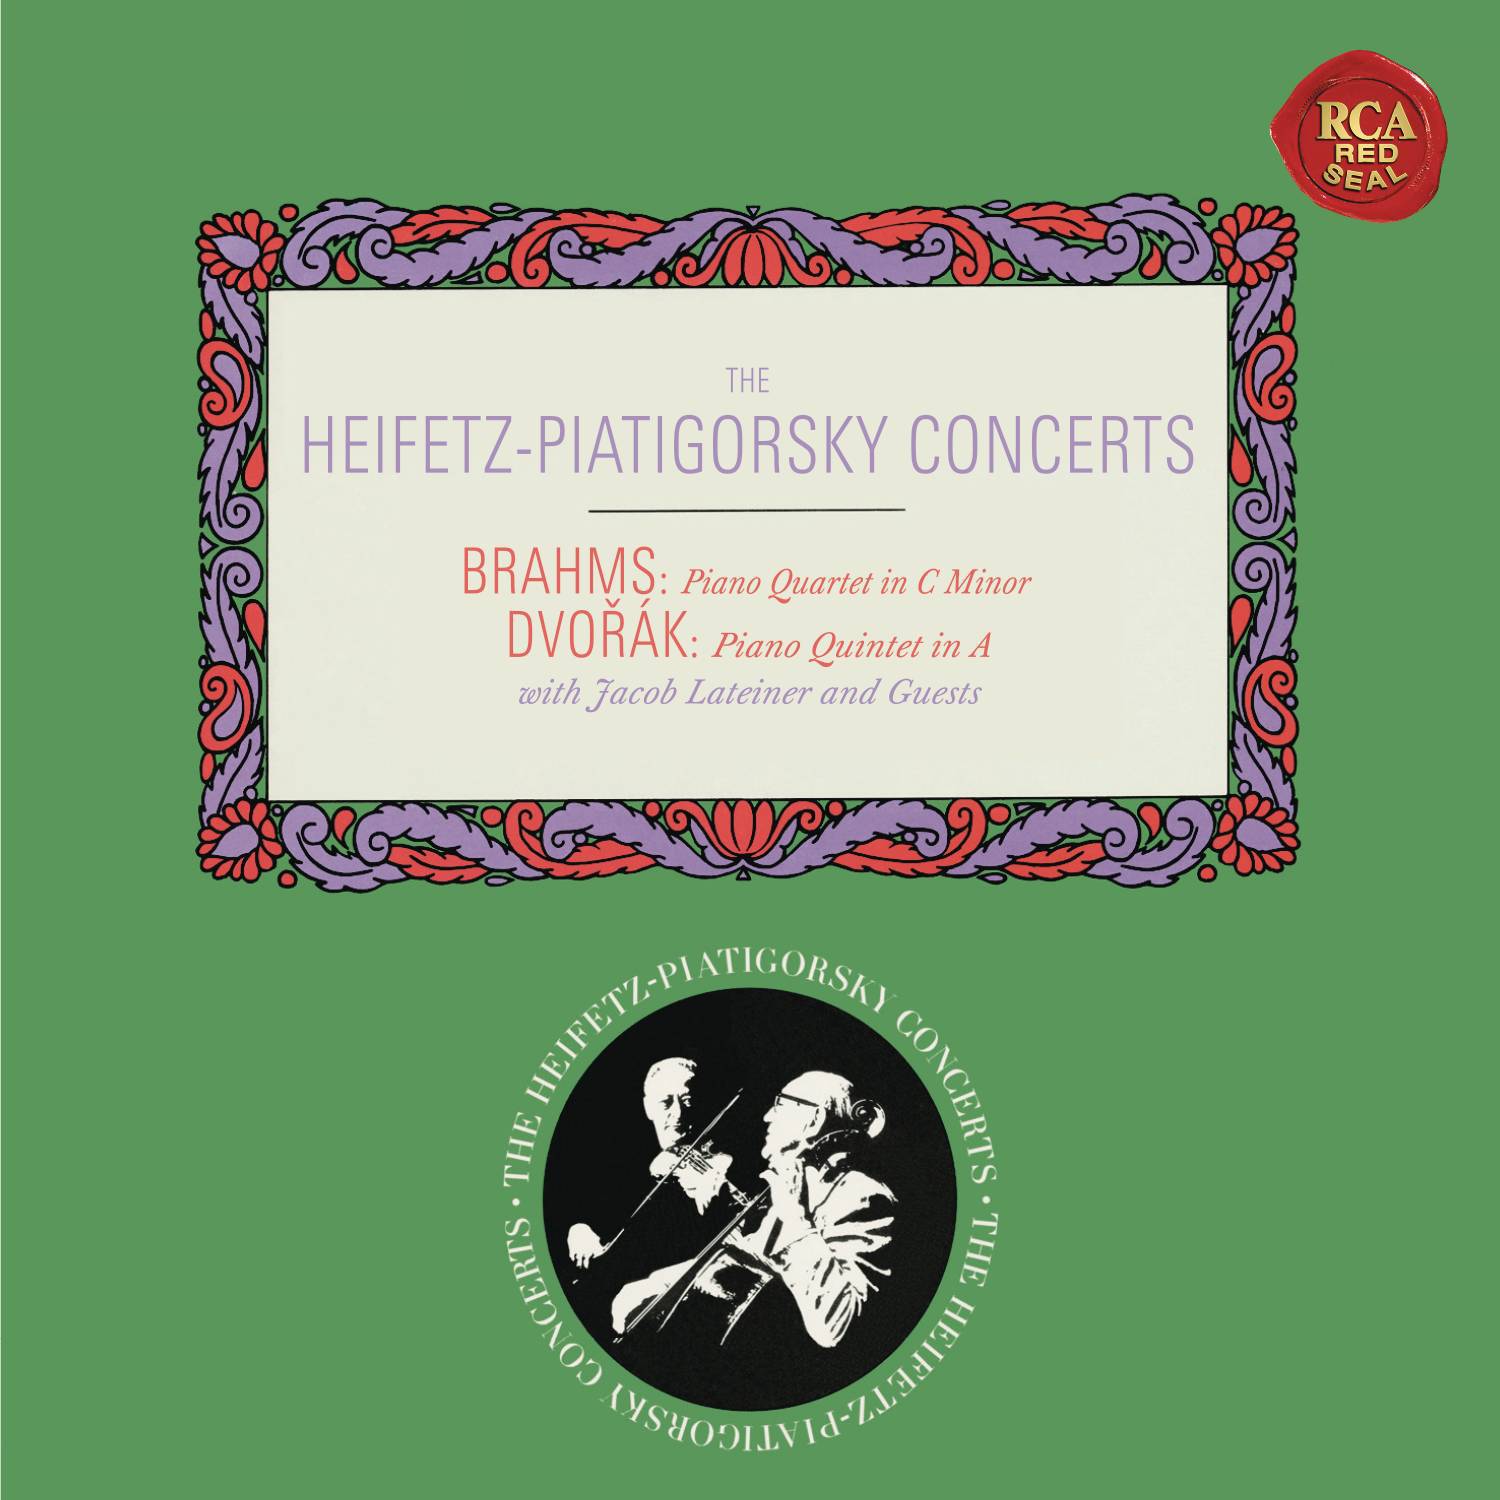 Brahms: Piano Quartet No. 3 in C Minor, Op. 60  Dvora k: Piano Quintet No. 2 in A Major, Op. 81  Heifetz Remastered